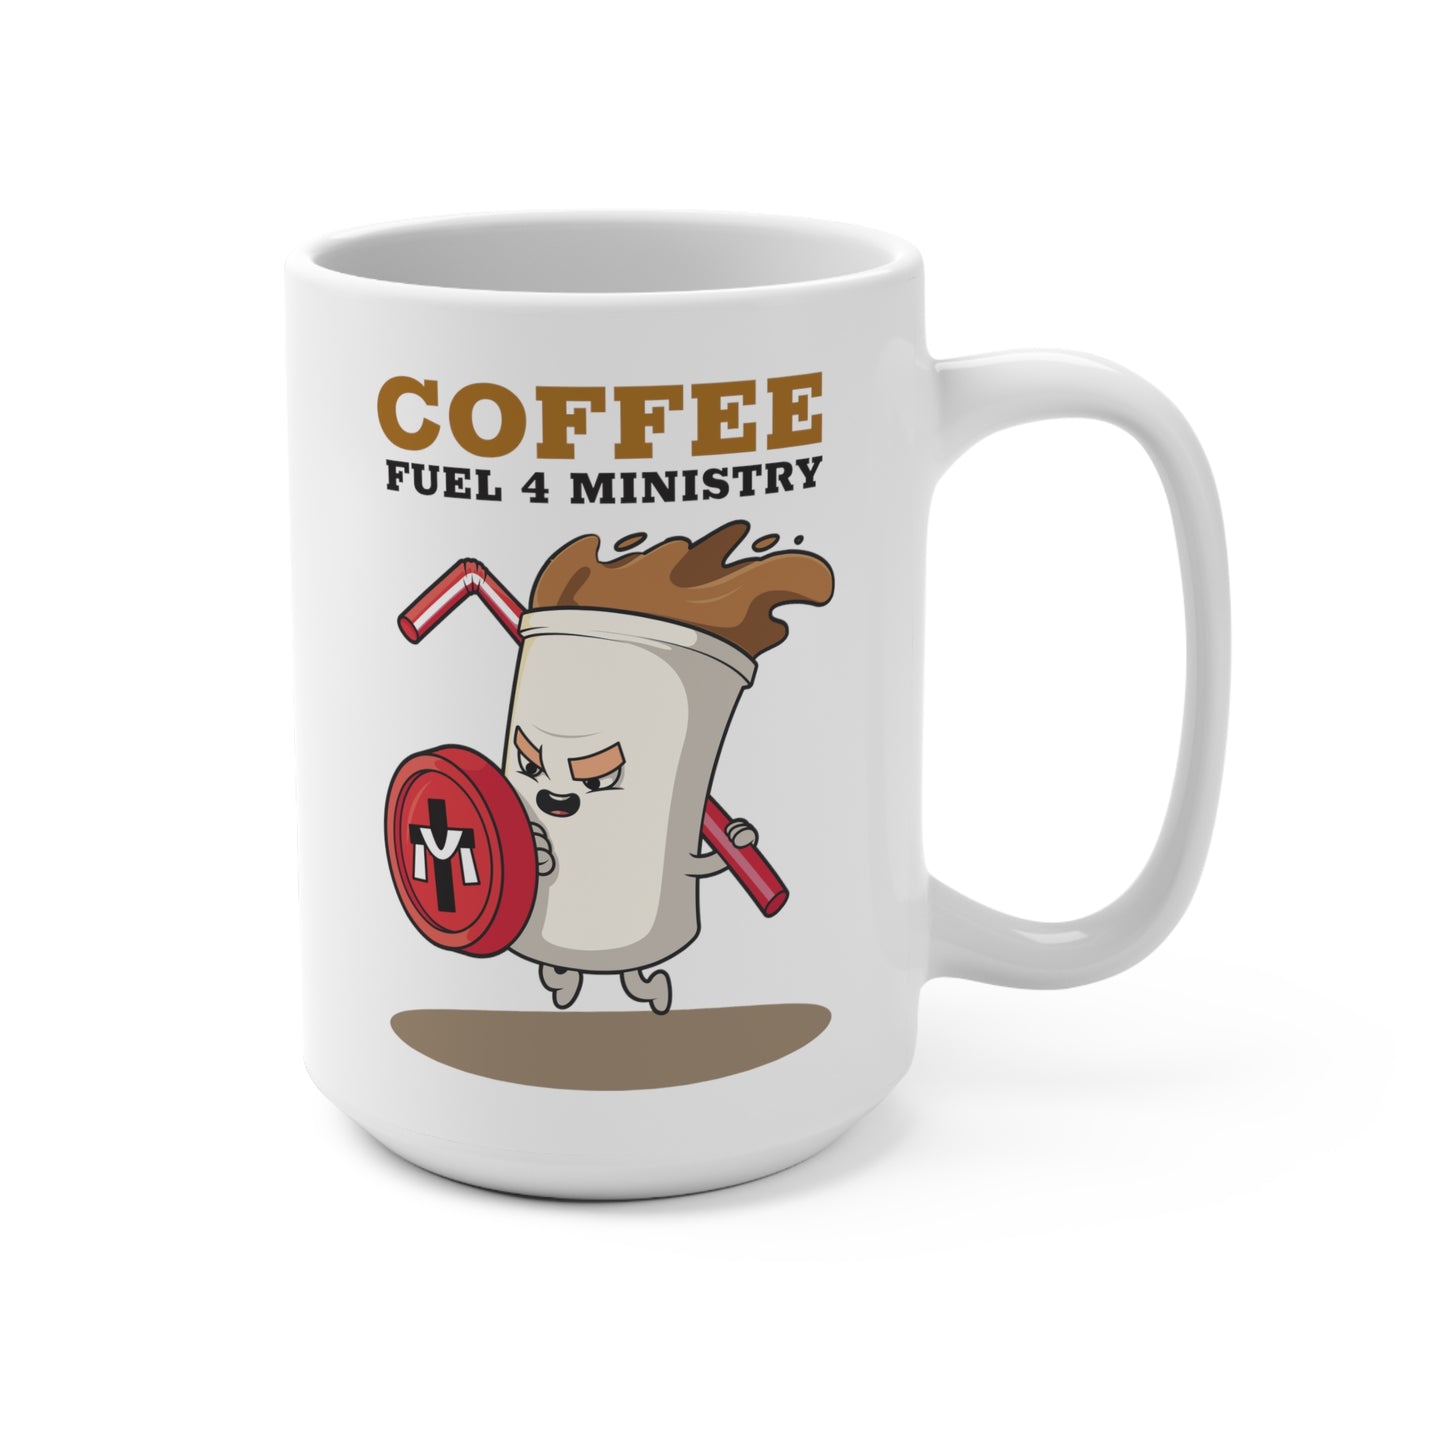 Coffee Warrior Mug 15oz